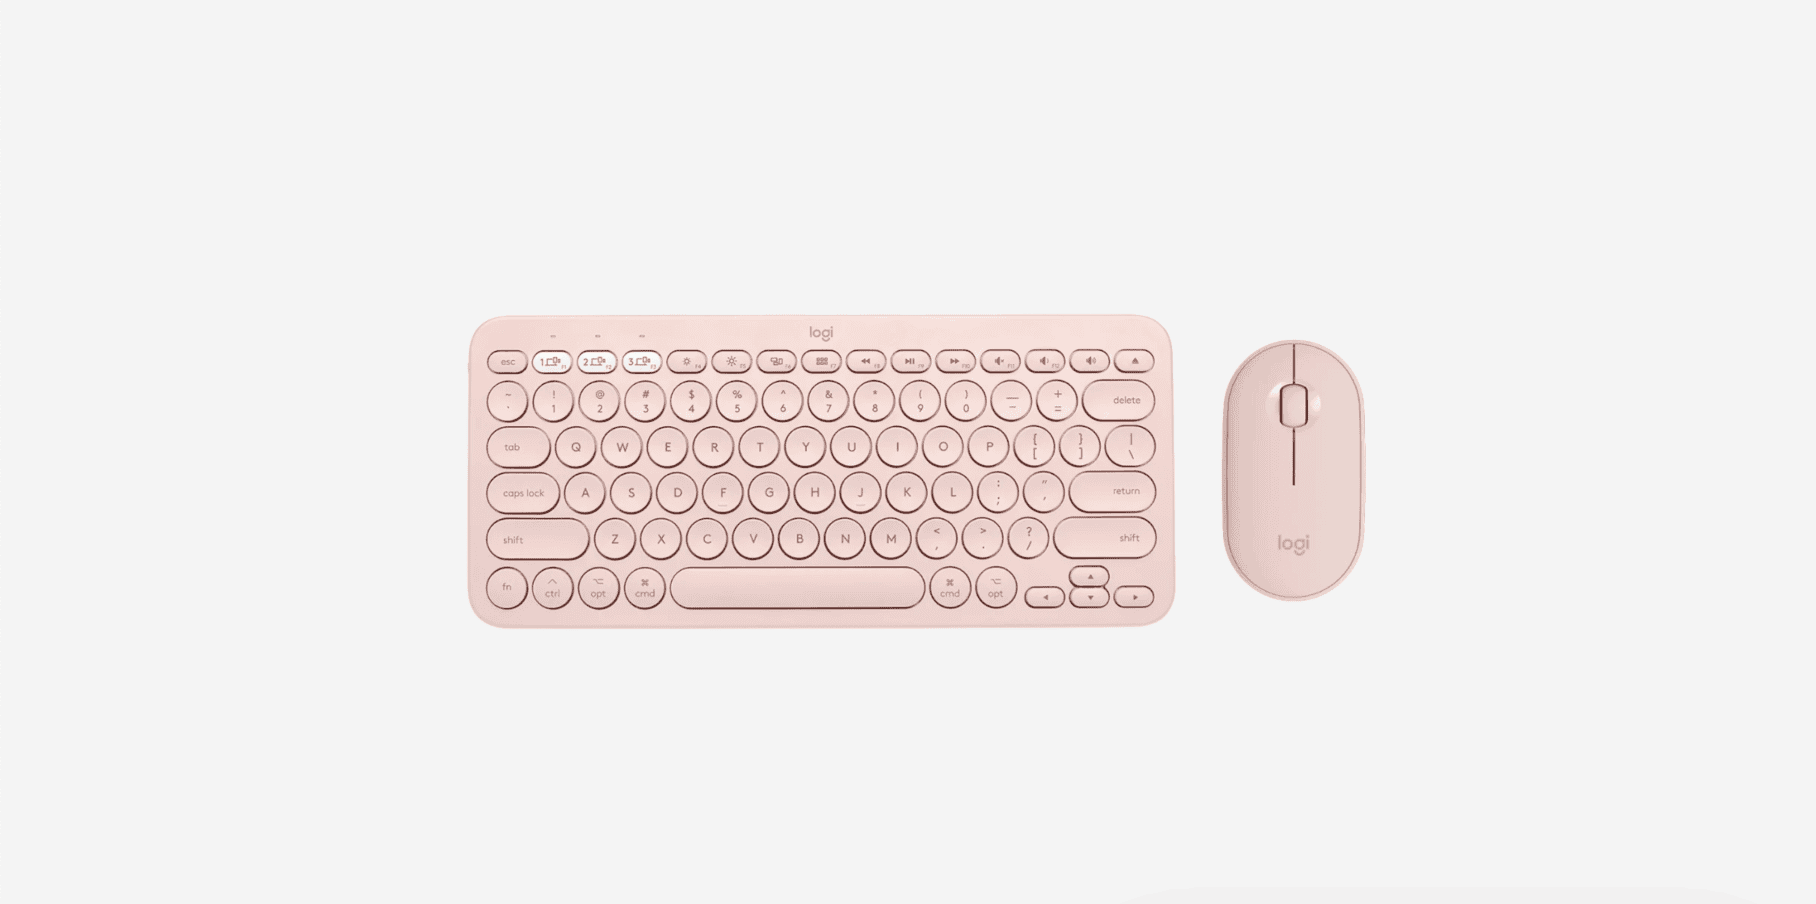 A Logitech Keyboard